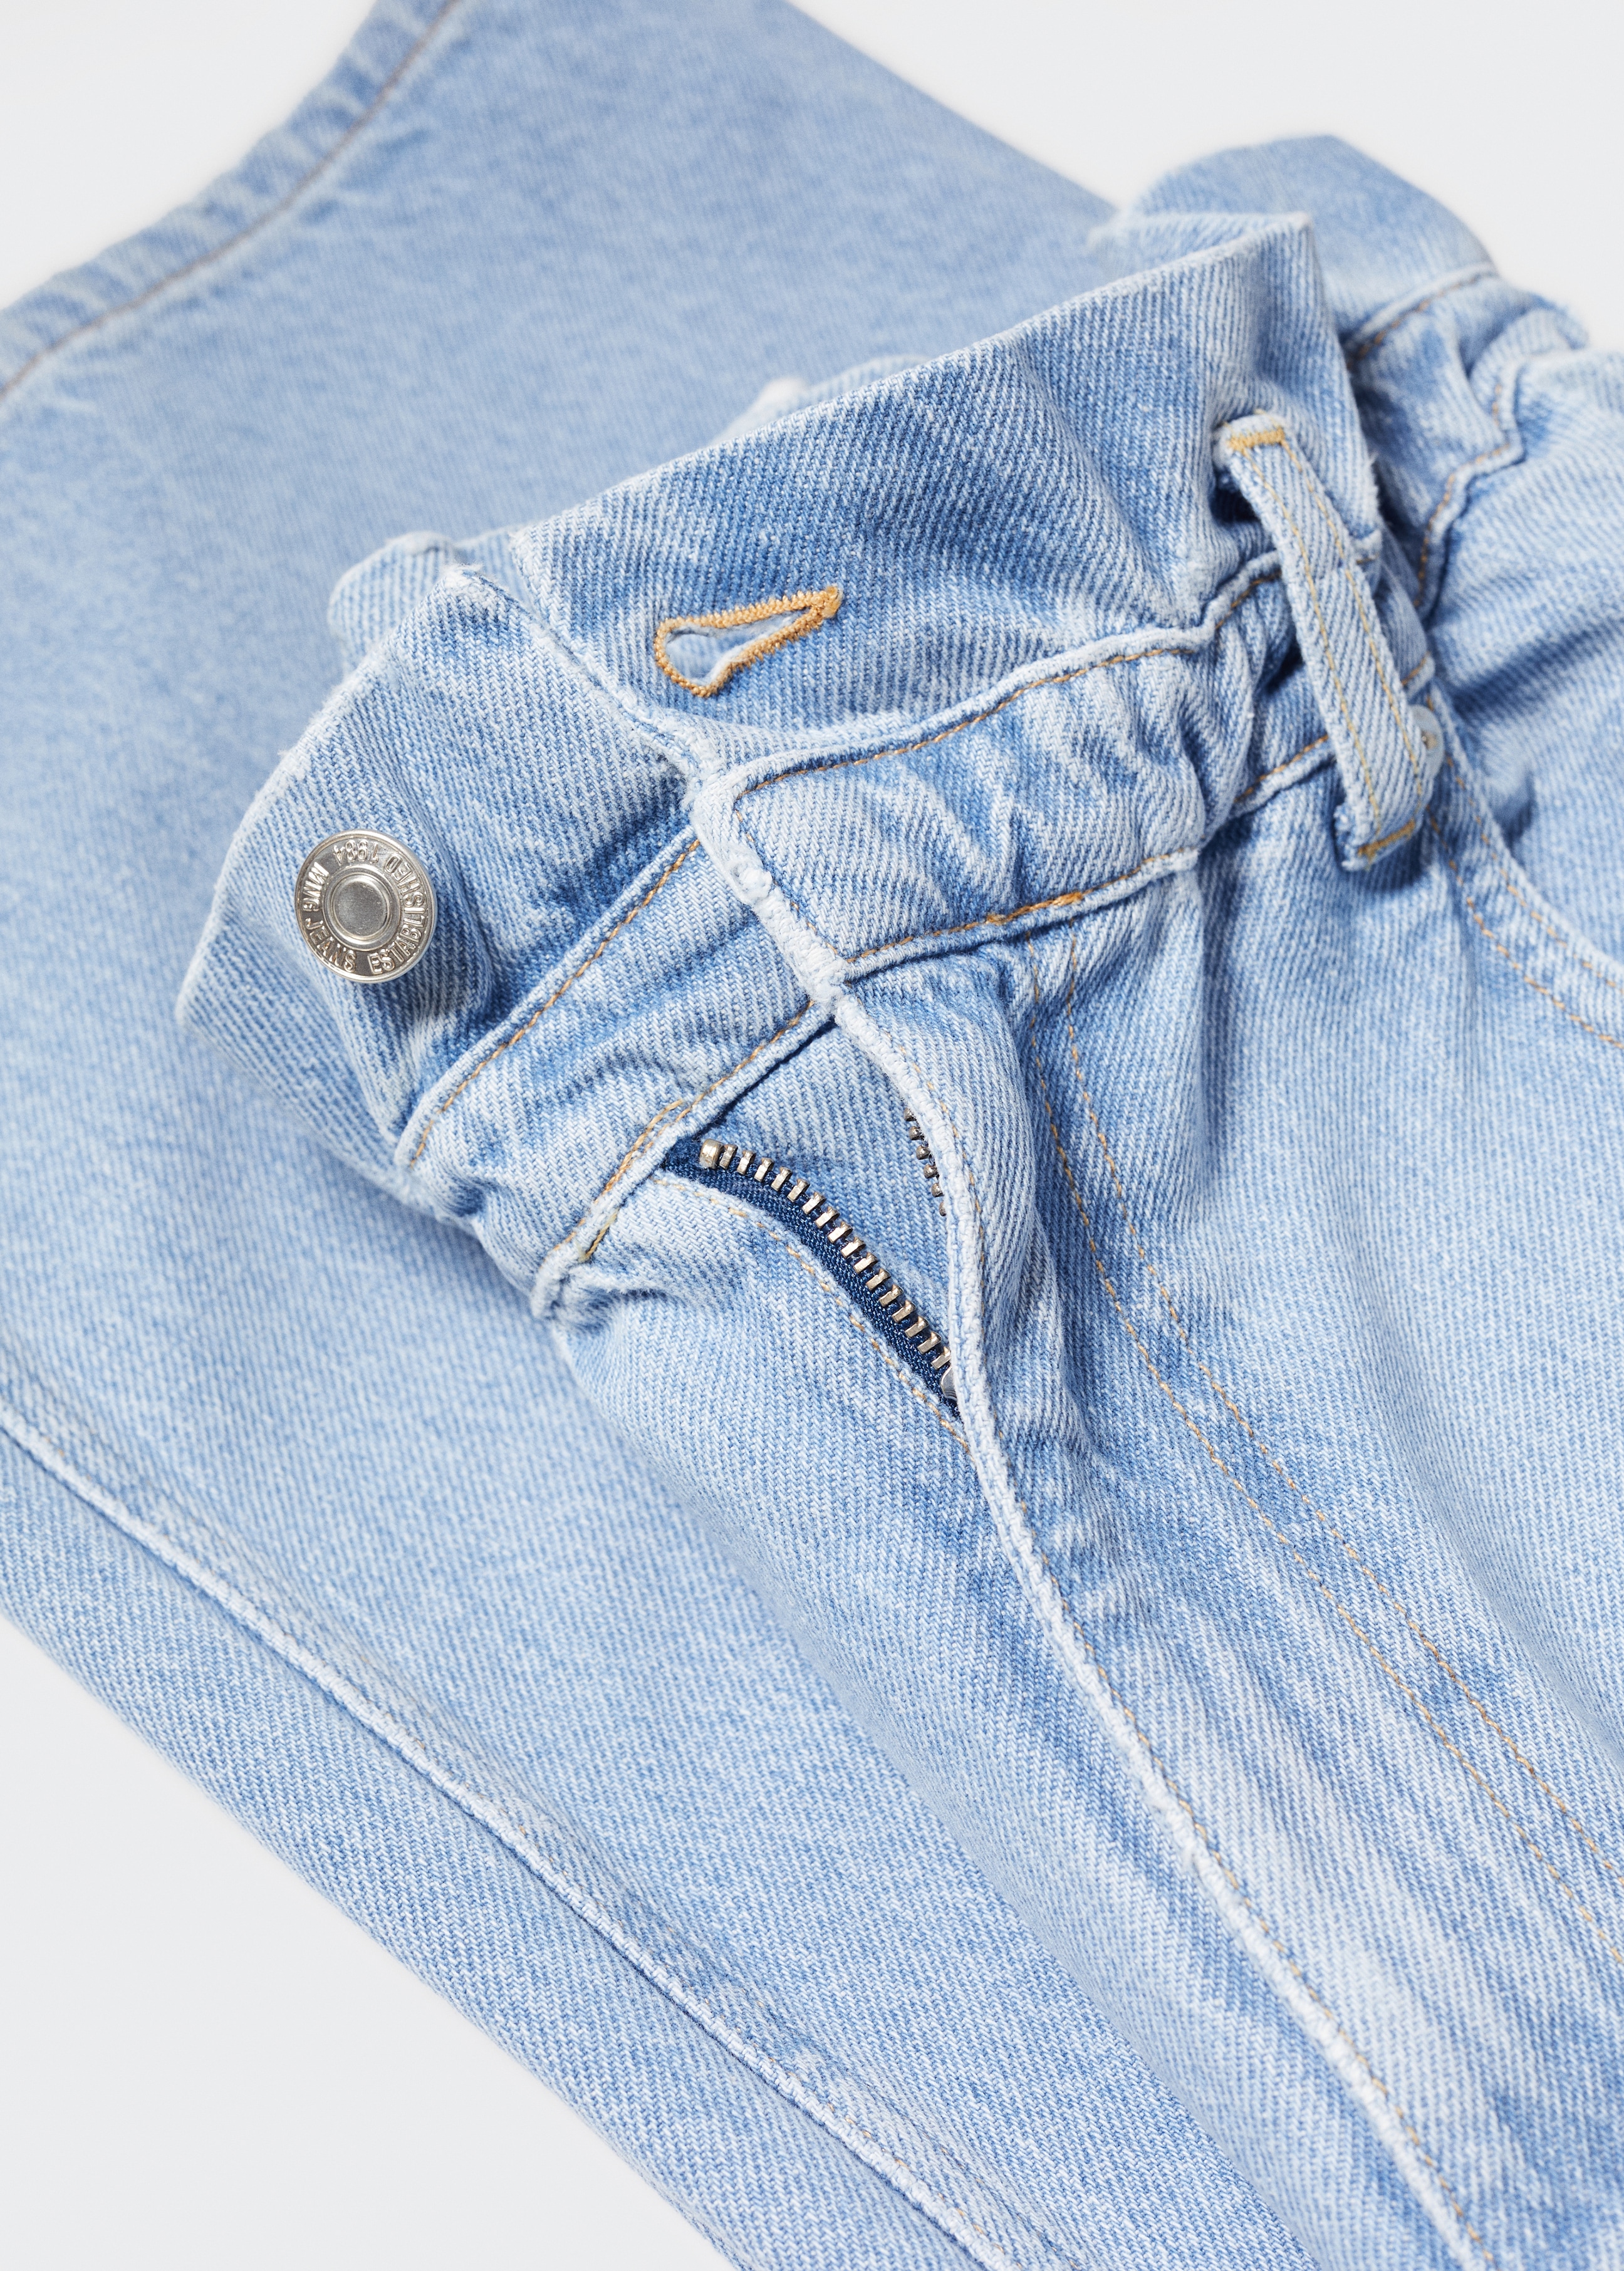 Slouchy Jeans mit Stretchbund - Detail des Artikels 8